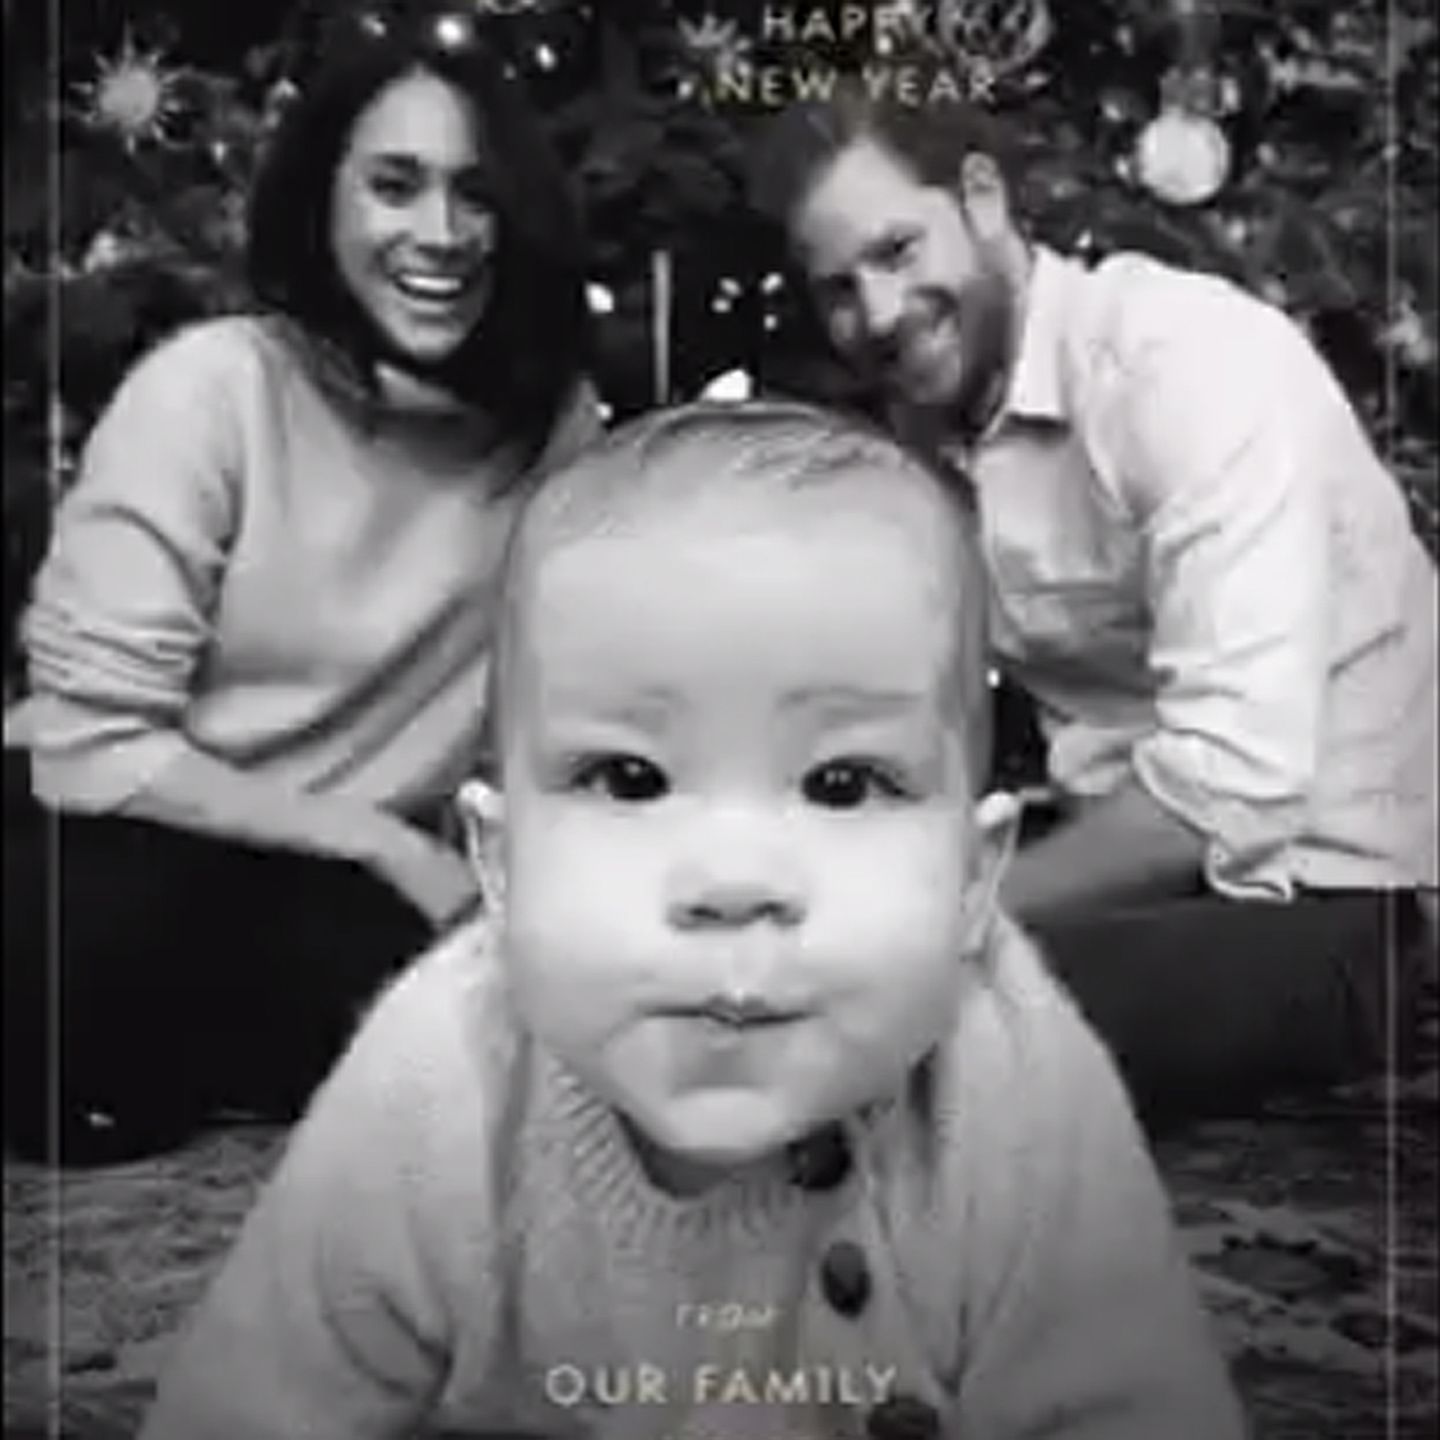 Prinz Harry Und Meghan Markle Verschicken Weihnachtskarte Mit Baby Archie Stern De